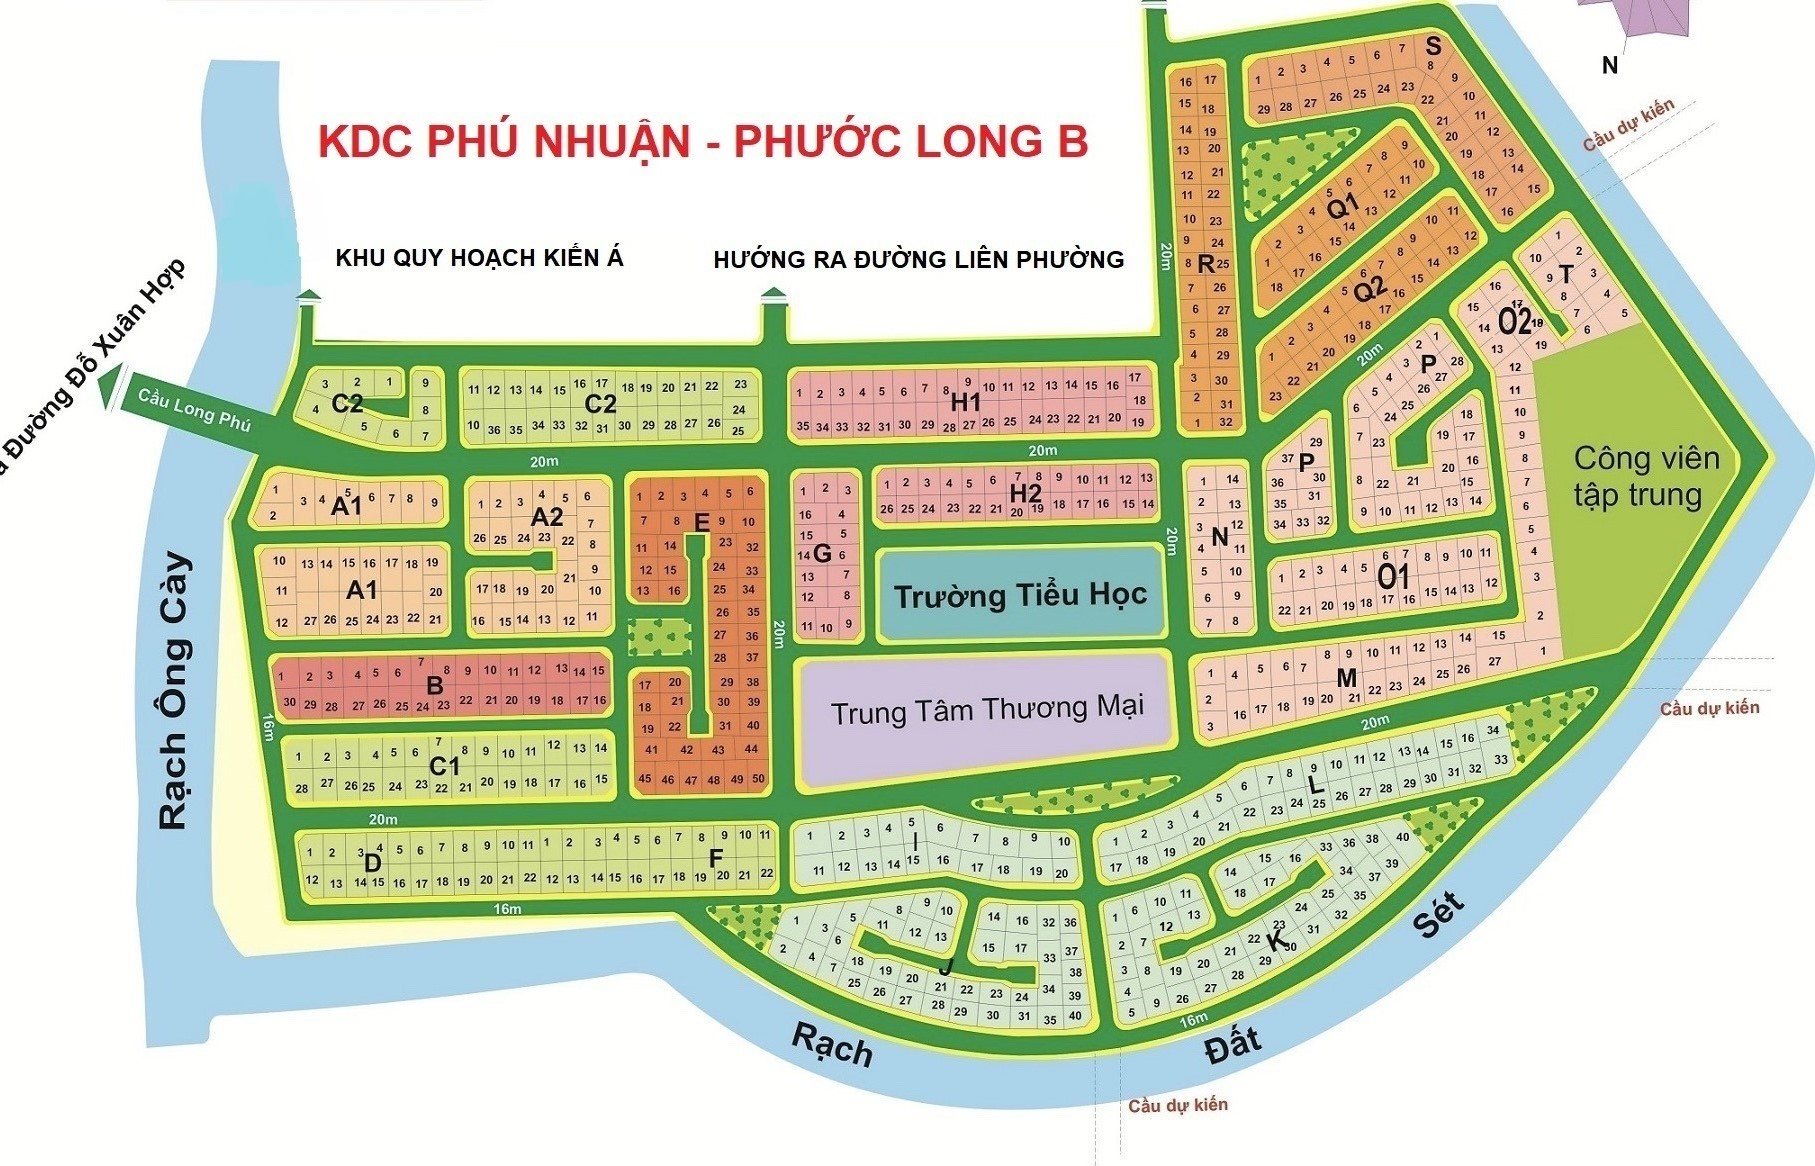 Cần bán đất nền đẹp, đối diện trường Mẫu giáo, diện tích 285m² nằm trong KDC Phú Nhuận, PLB, quận 9 1